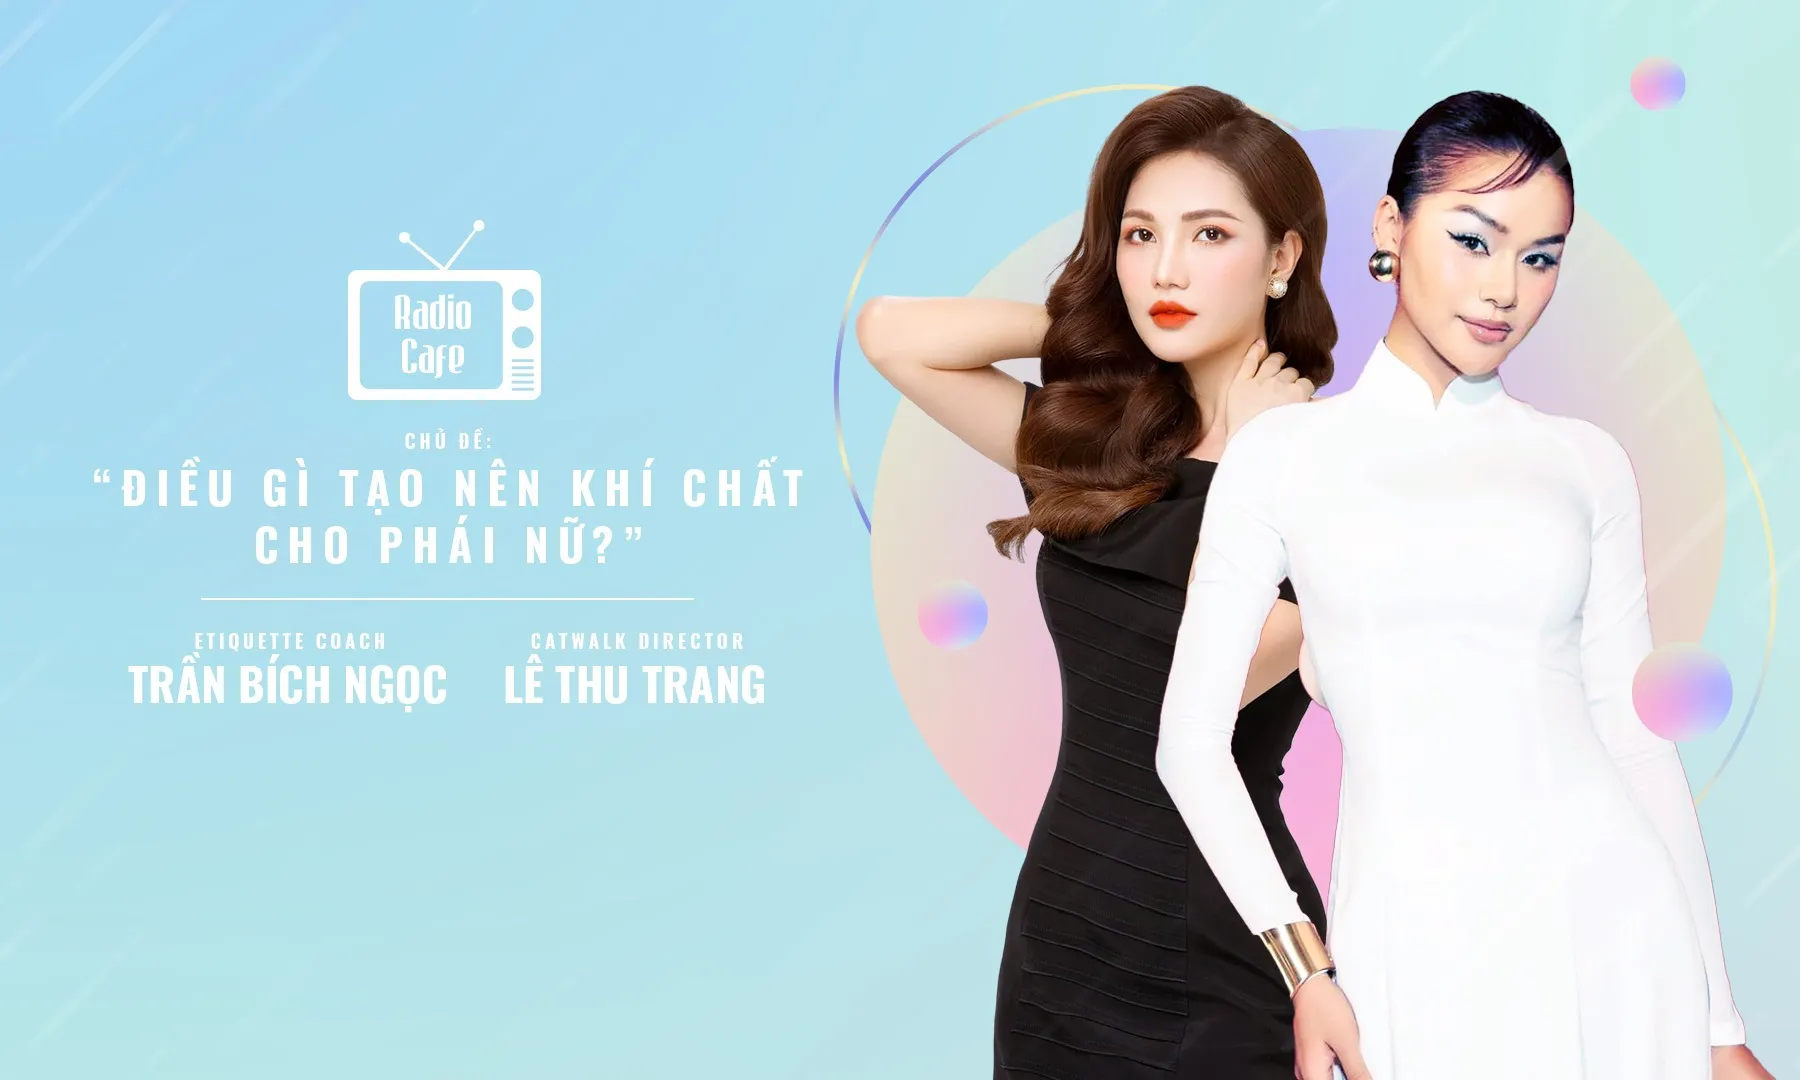 Coach Bích Ngọc và Thu Trang: Ăn mặc không chỉn chu khi xin việc sẽ không có lợi thế